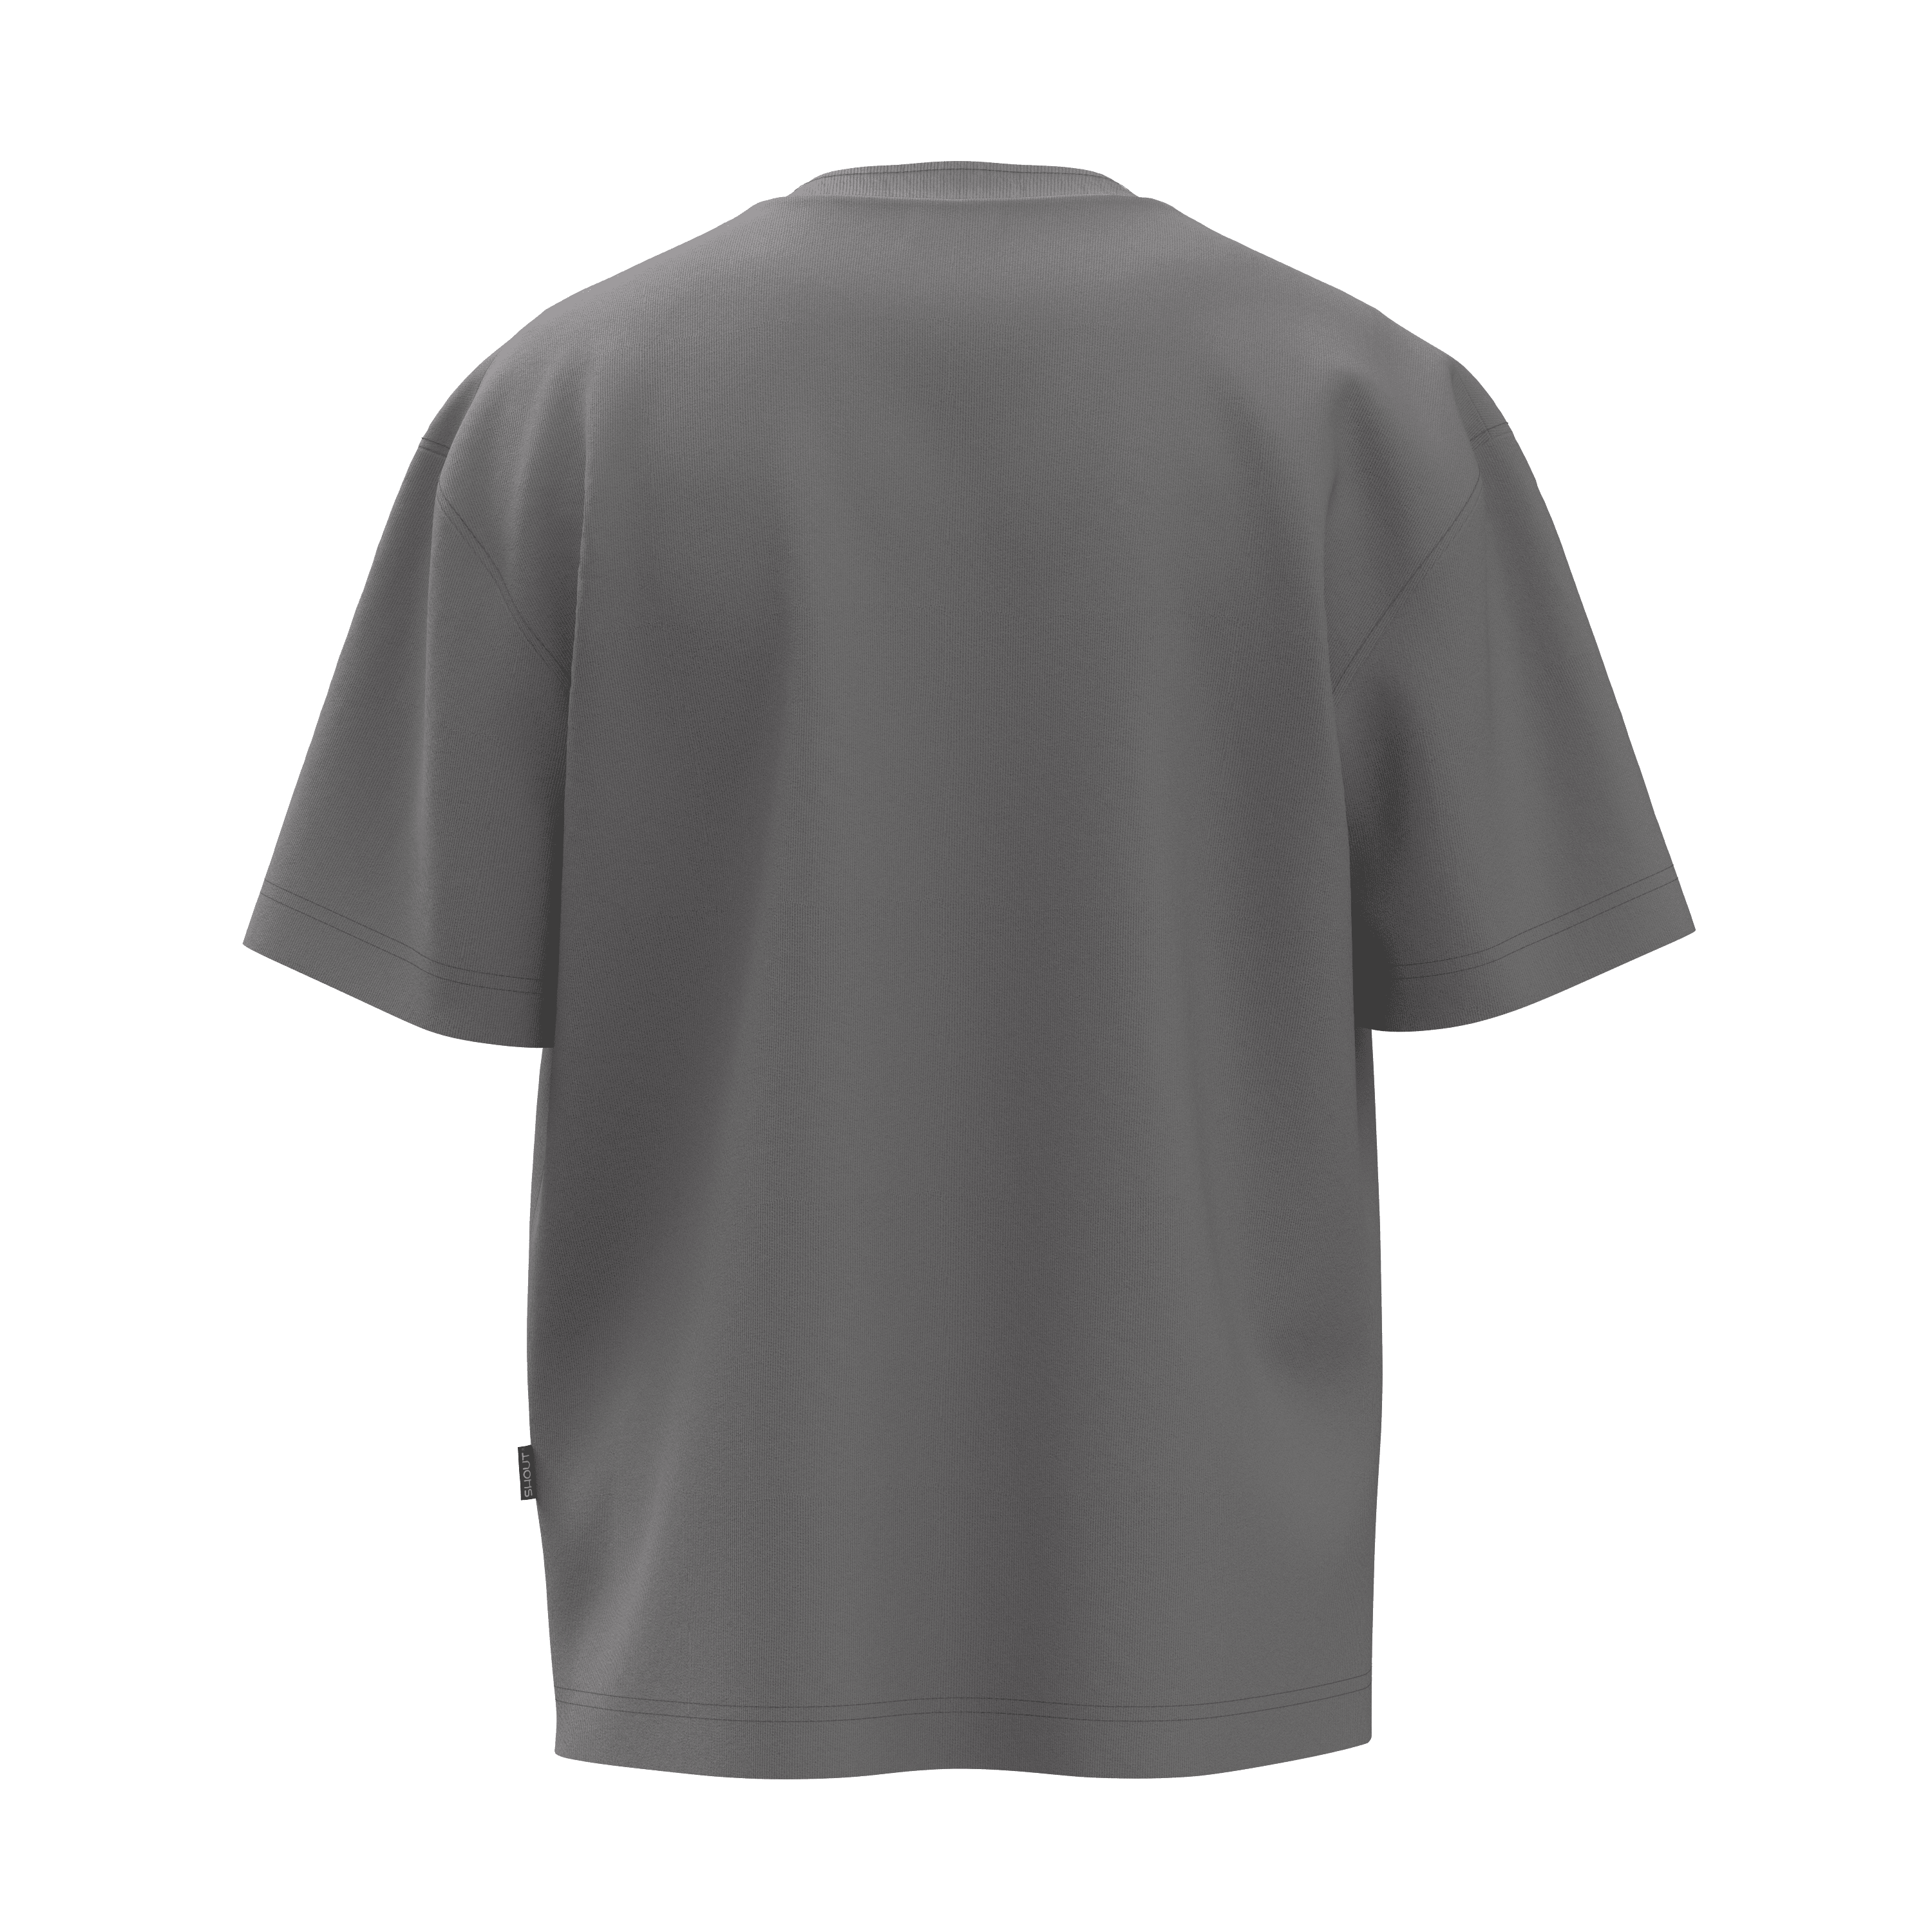 Shout Oversize Embroidery New Logo Basic Grey Unisex T-Shirt